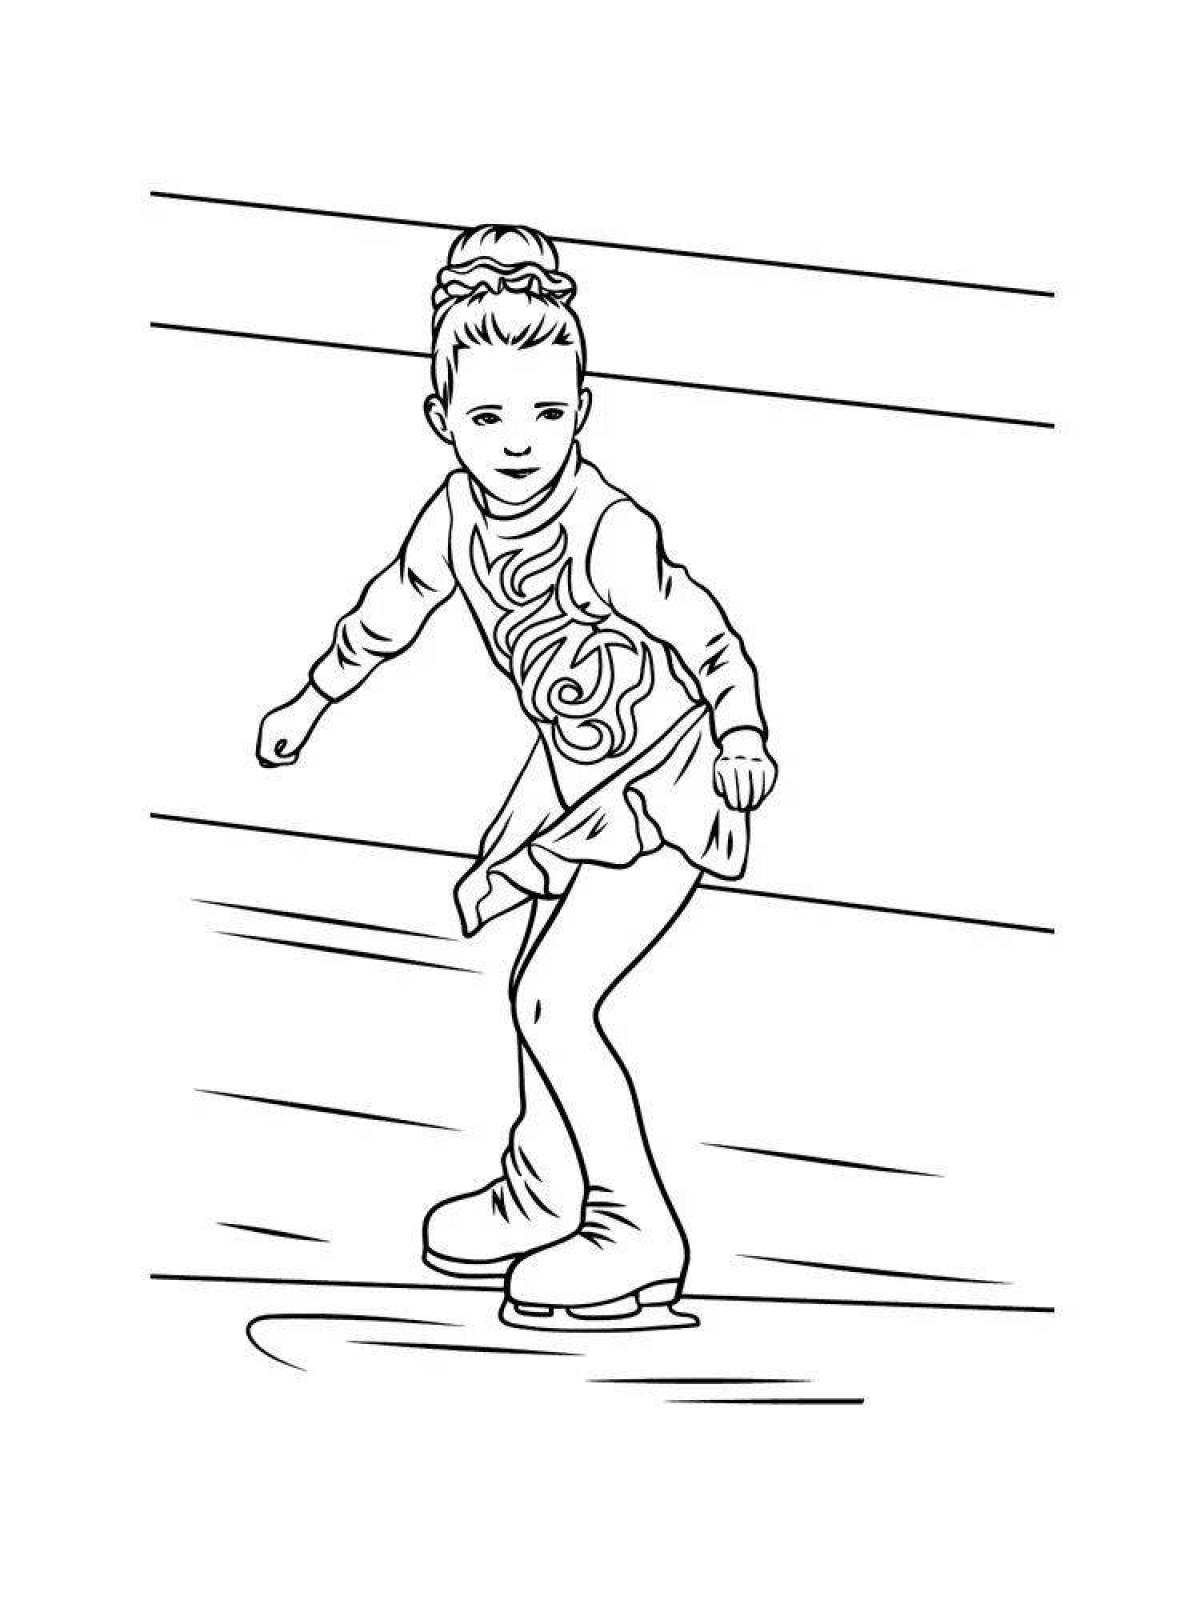 A cheerful girl on skates